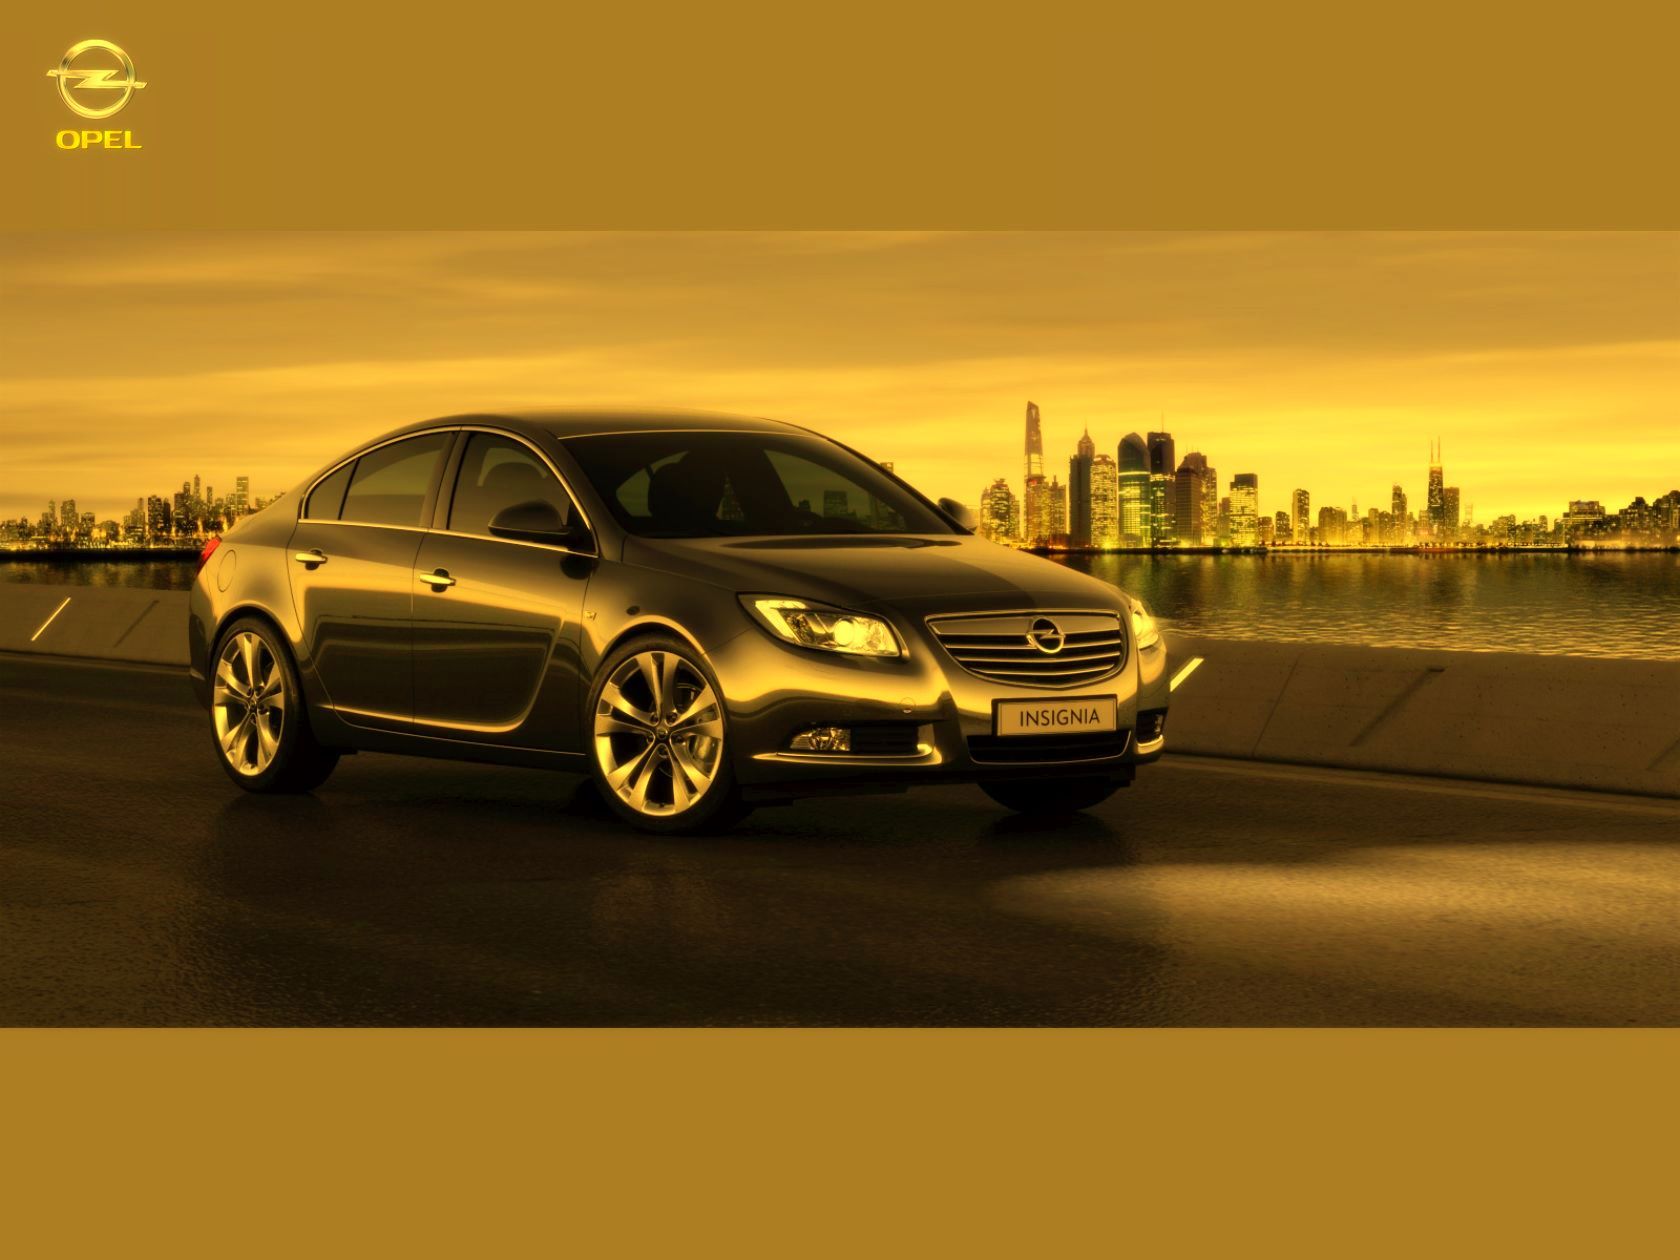 Скачать картинку Опель (Opel), Транспорт, Машины в телефон бесплатно.